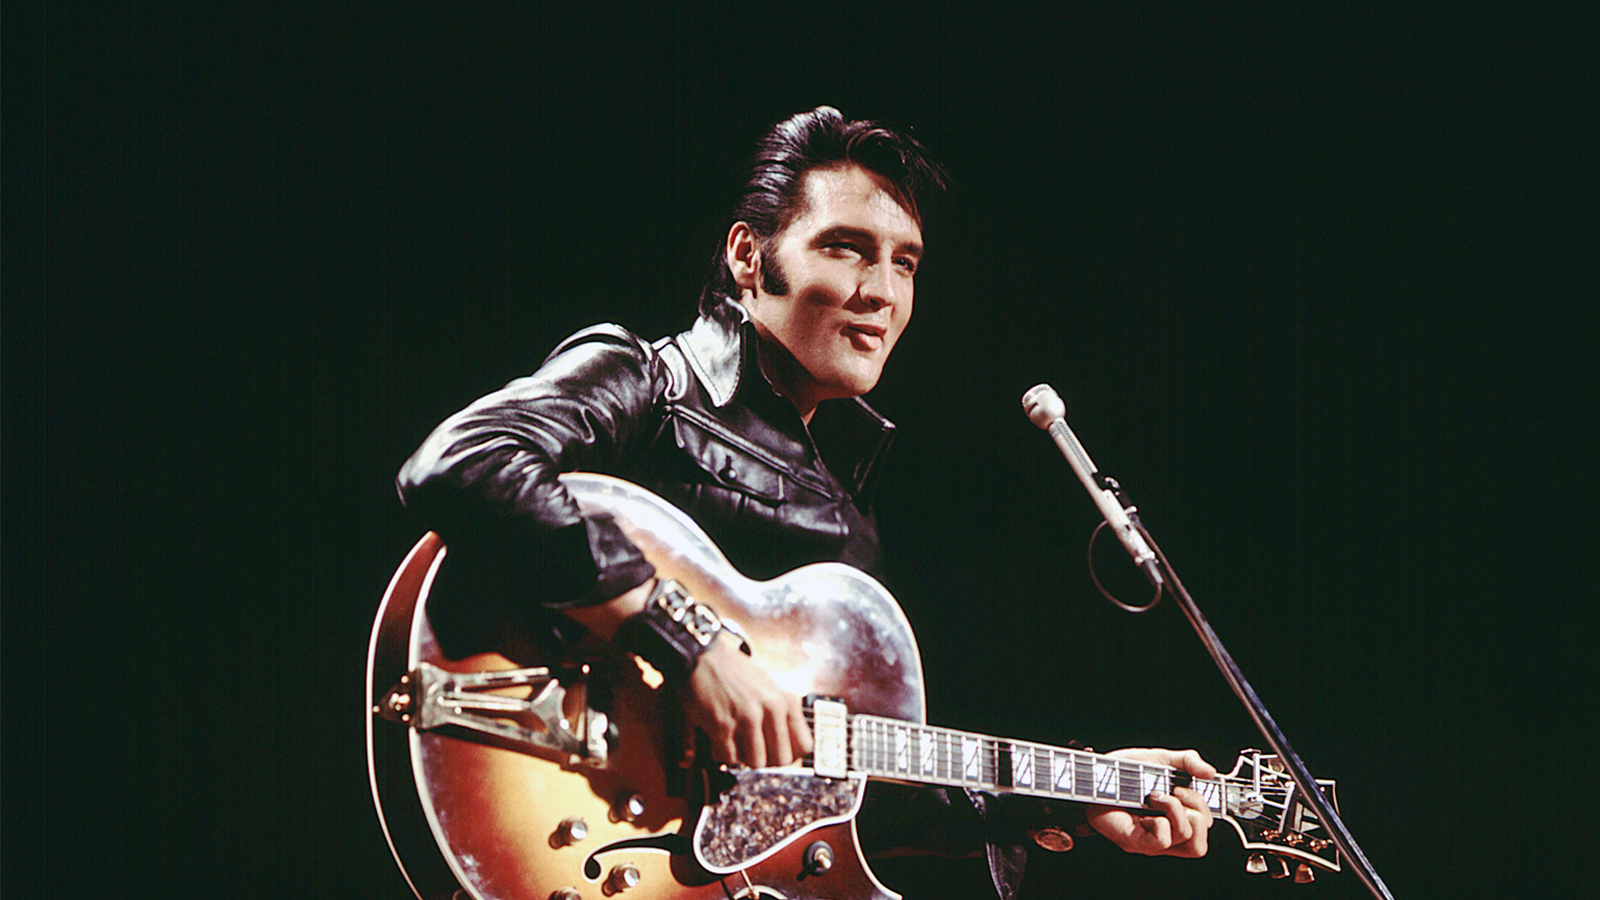 Elvis performing on stage